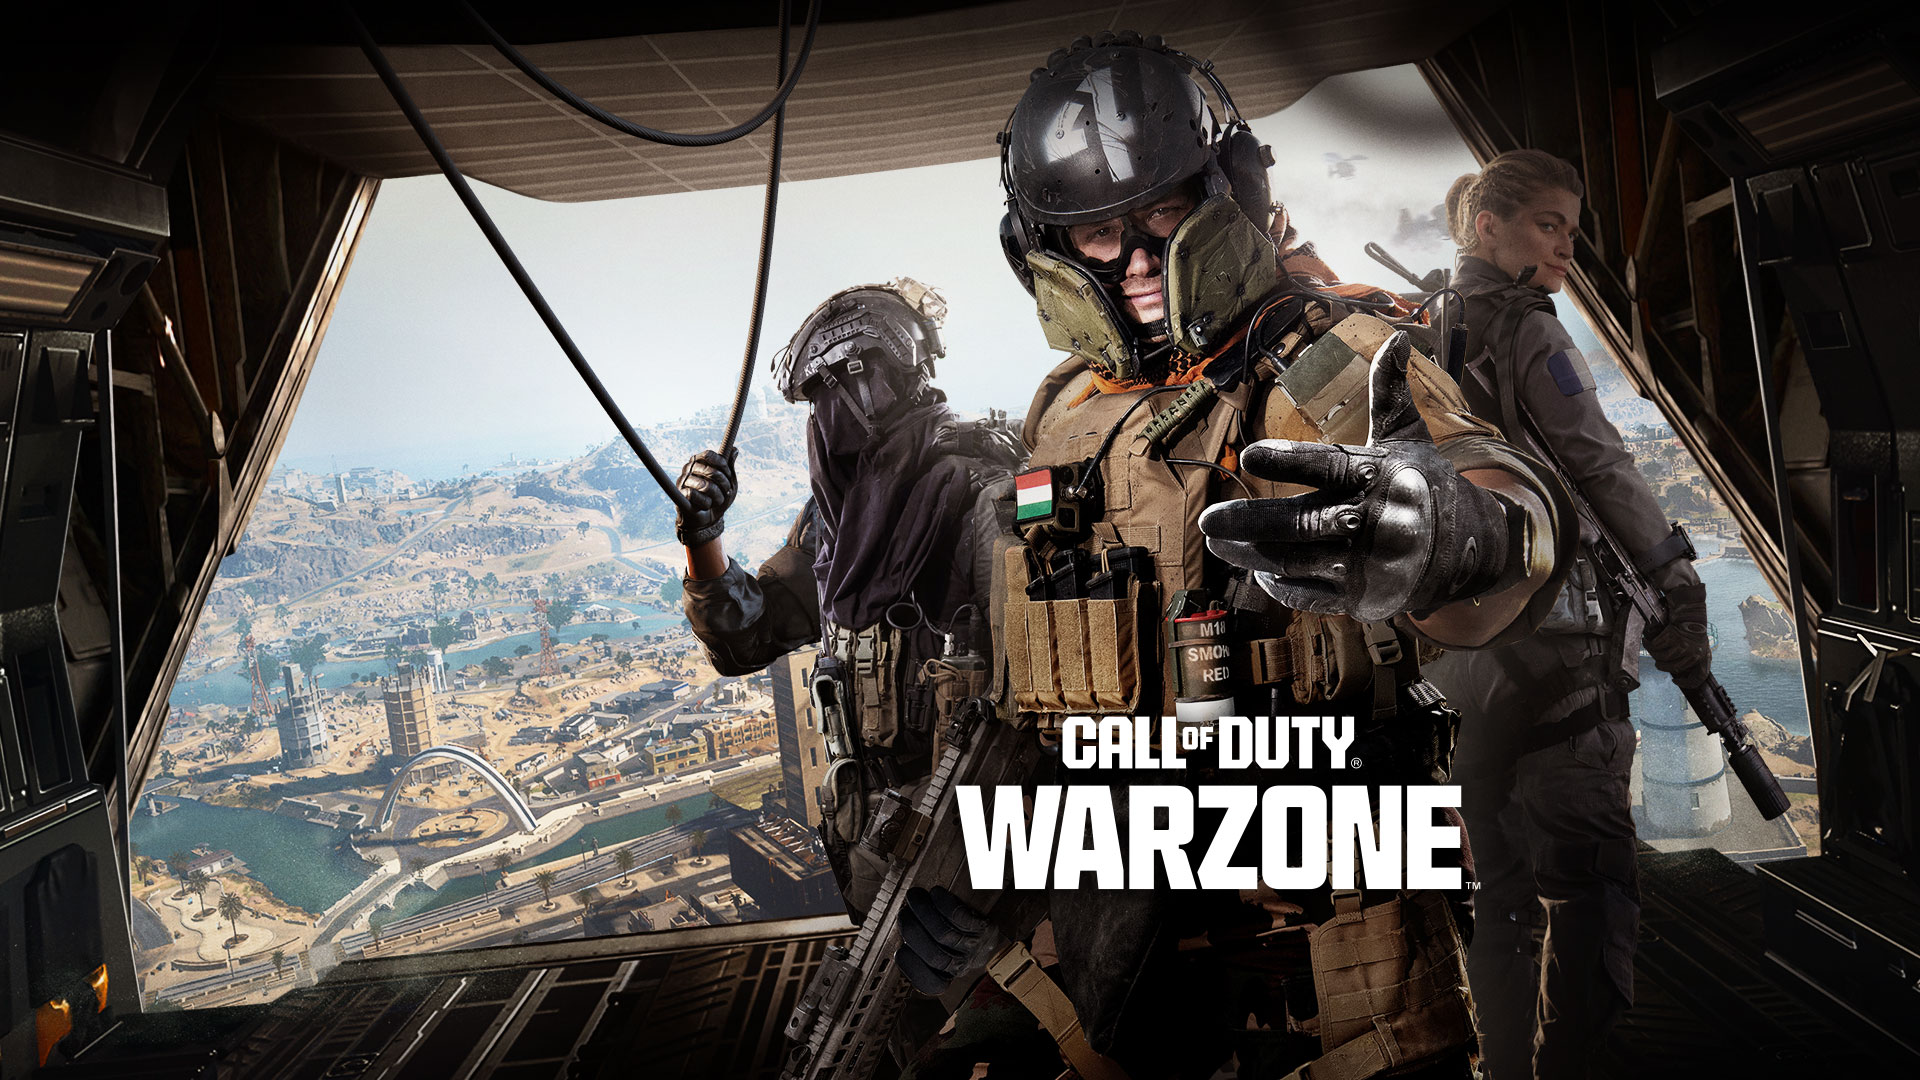 Call of Duty Warzone, debout à l’arrière d’un avion de transport, un trio d’opérateurs vous invite à rejoindre l’action.